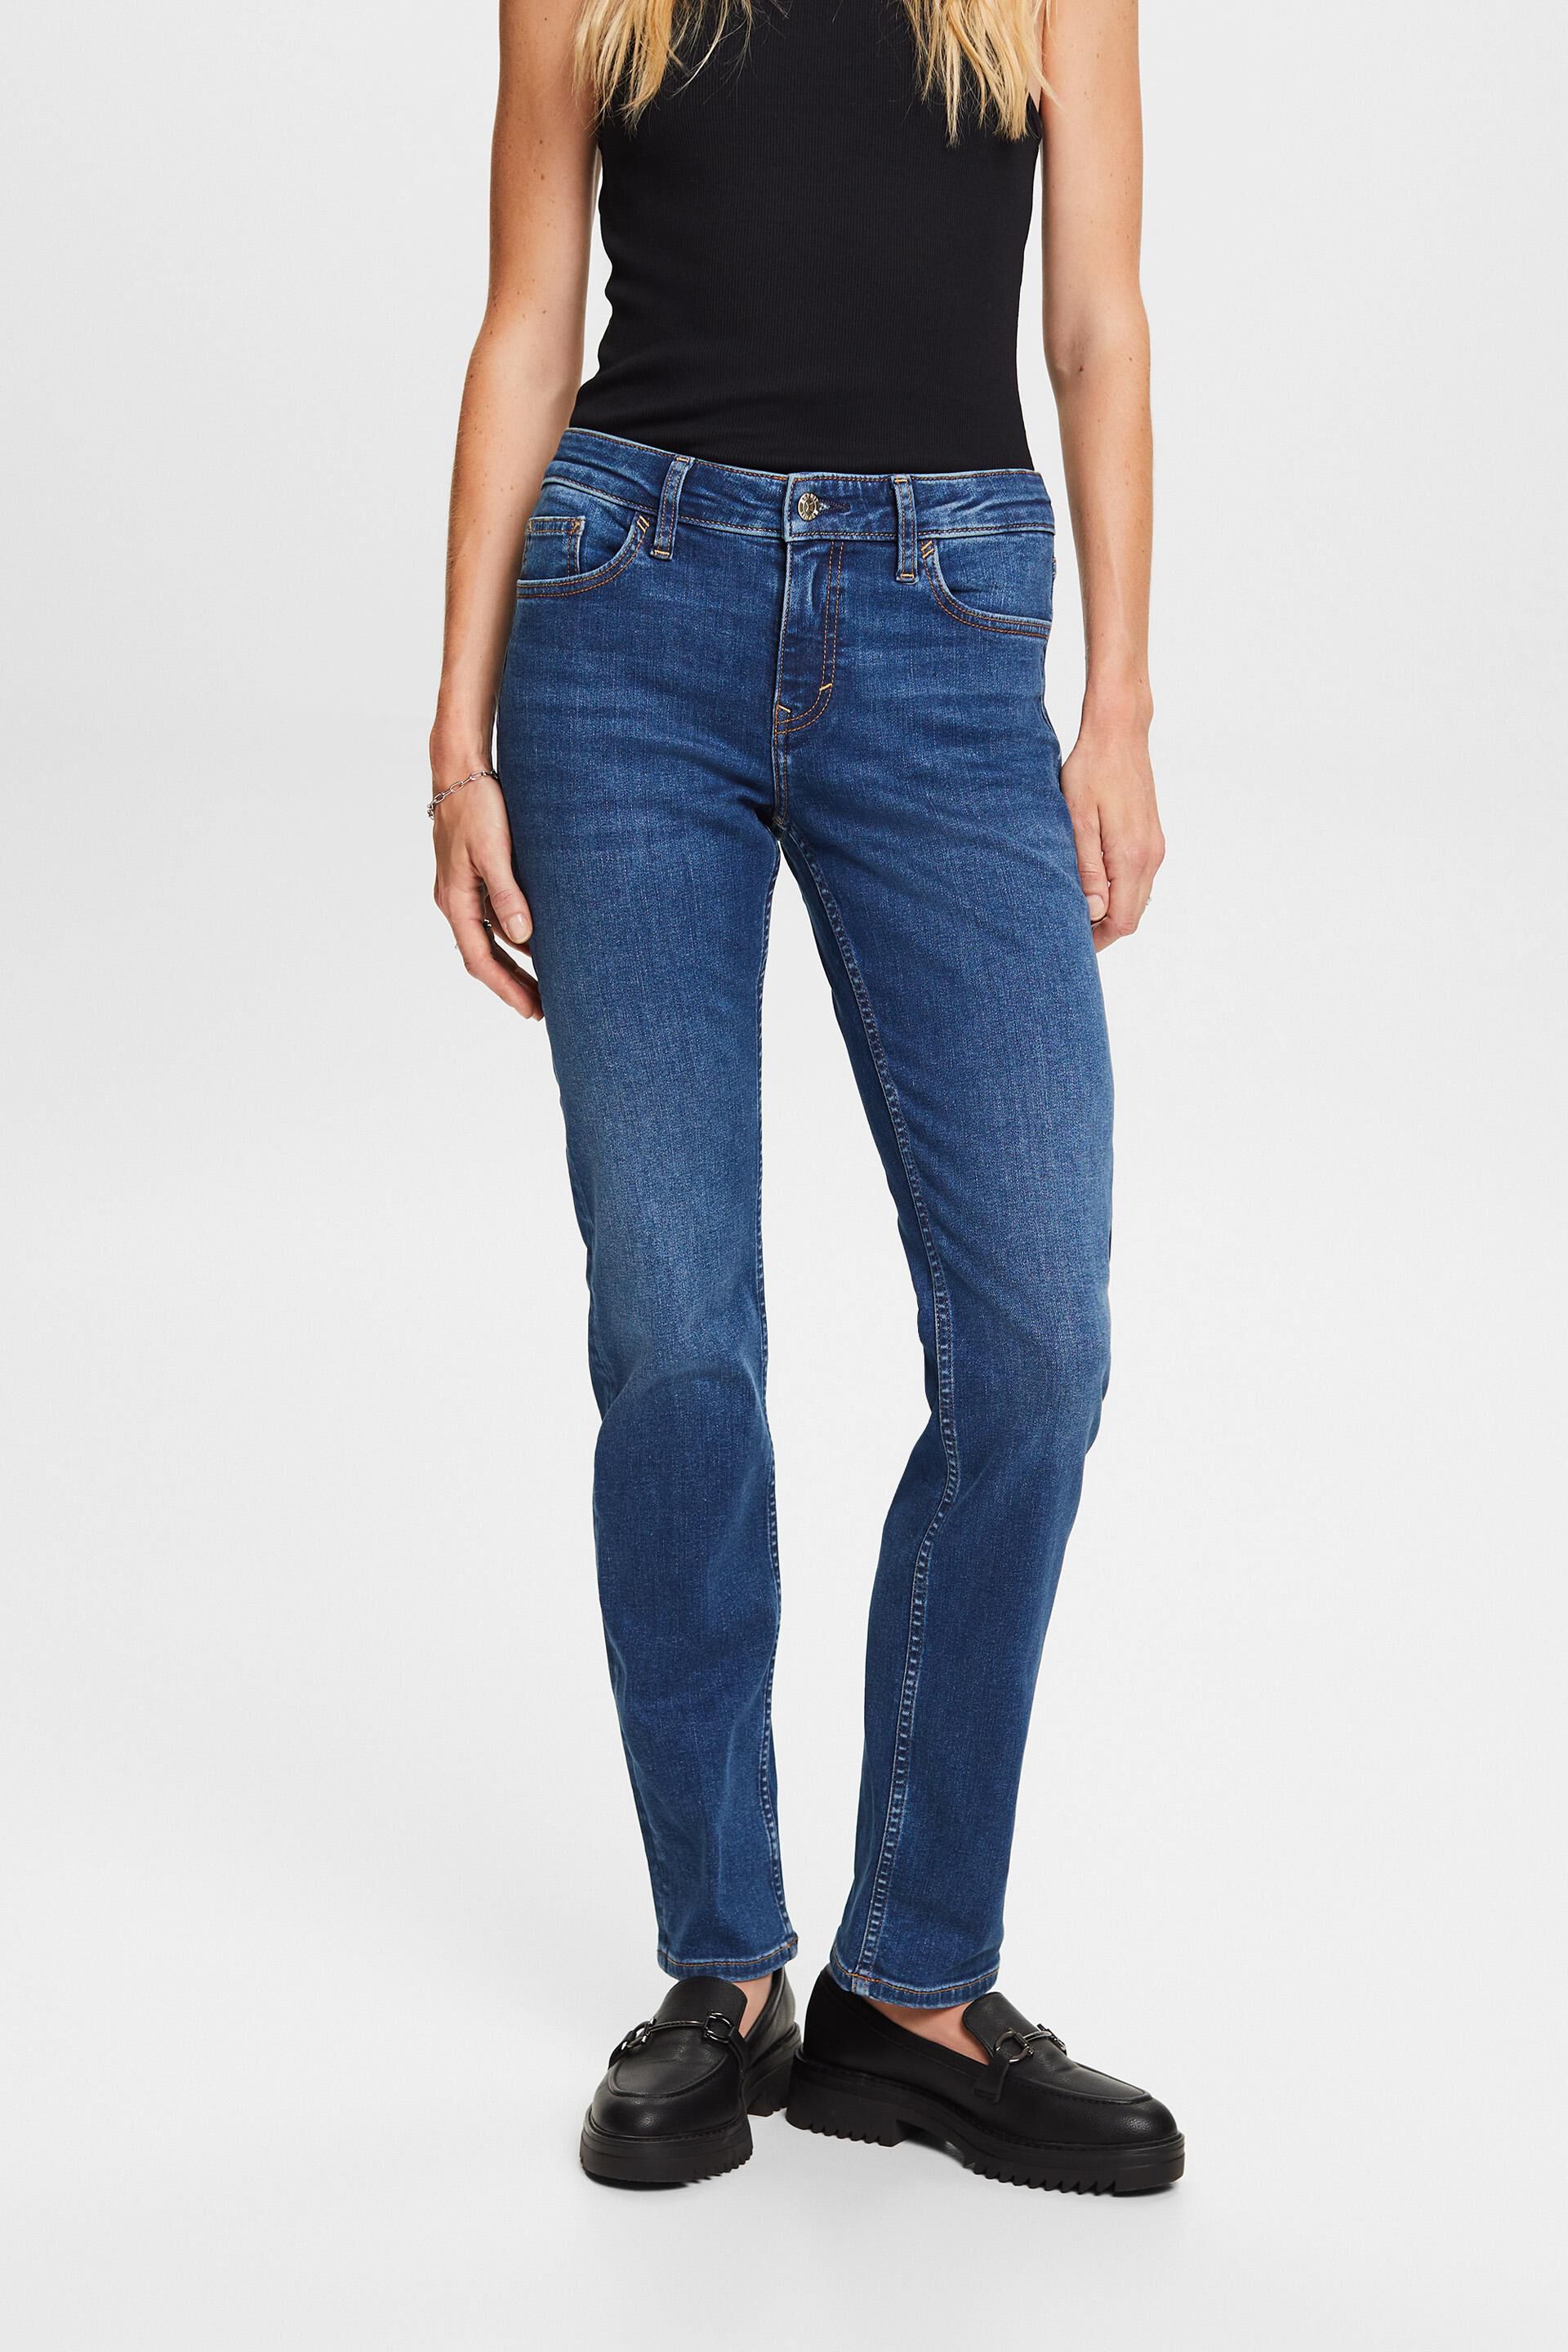 Esprit cotton jeans, Straight stretch leg blend